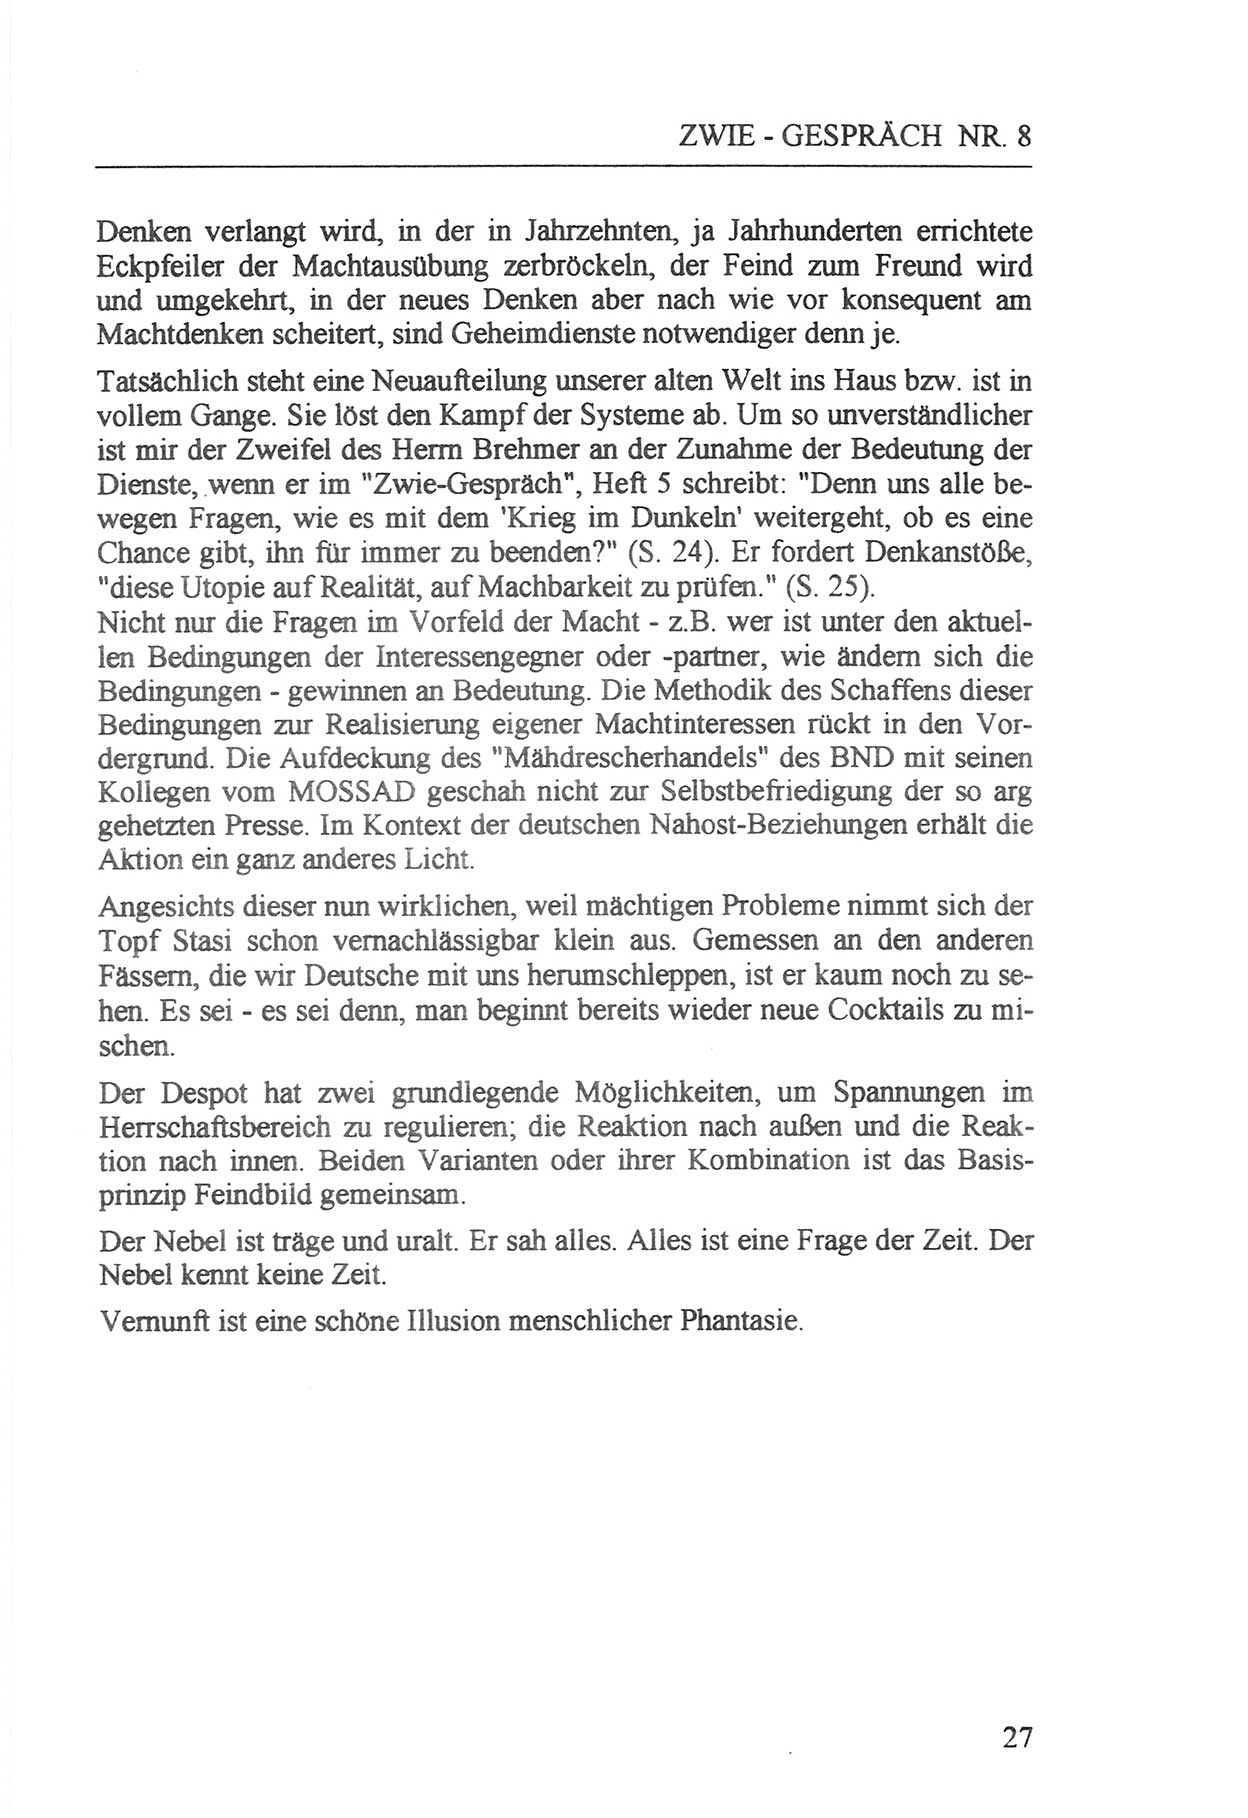 Zwie-Gespräch, Beiträge zur Aufarbeitung der Staatssicherheits-Vergangenheit [Deutsche Demokratische Republik (DDR)], Ausgabe Nr. 8, Berlin 1992, Seite 27 (Zwie-Gespr. Ausg. 8 1992, S. 27)